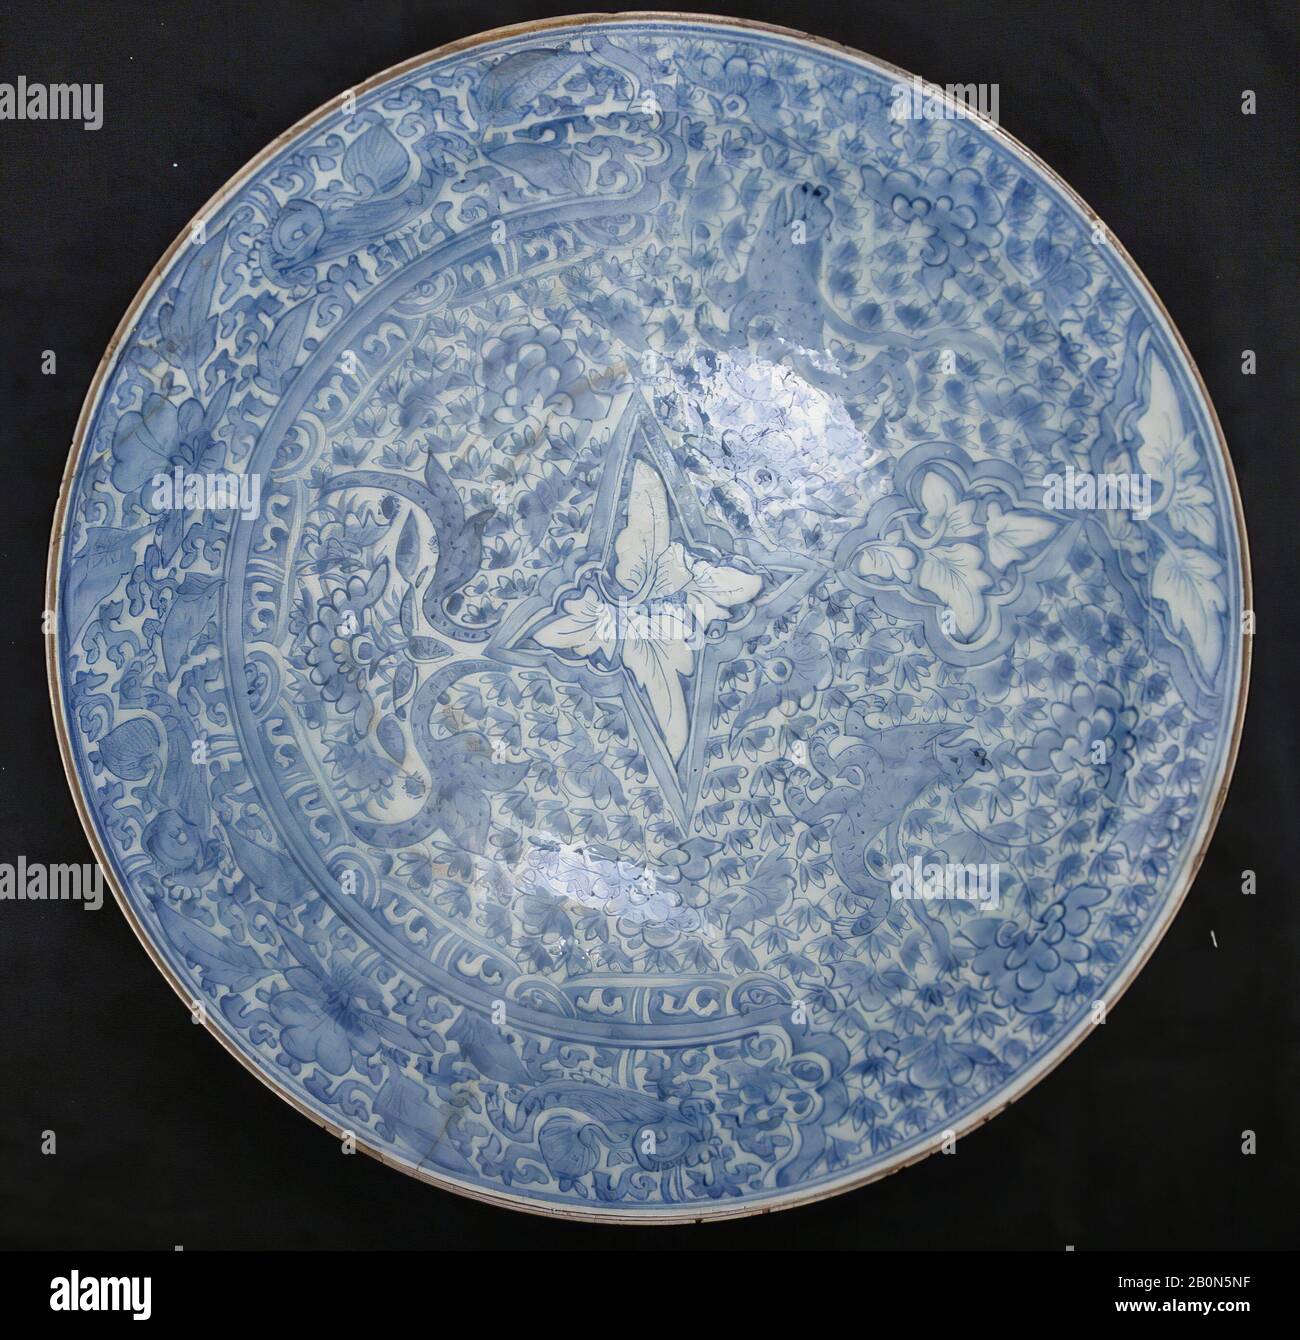 Gericht, Ende 17.-Anfang 18. Jahrhundert, Dem Iran zugeschrieben, Stonepaste; gemalt und glasiert, D. 18 1/4 Zoll. (46,4 cm), Keramik Stockfoto